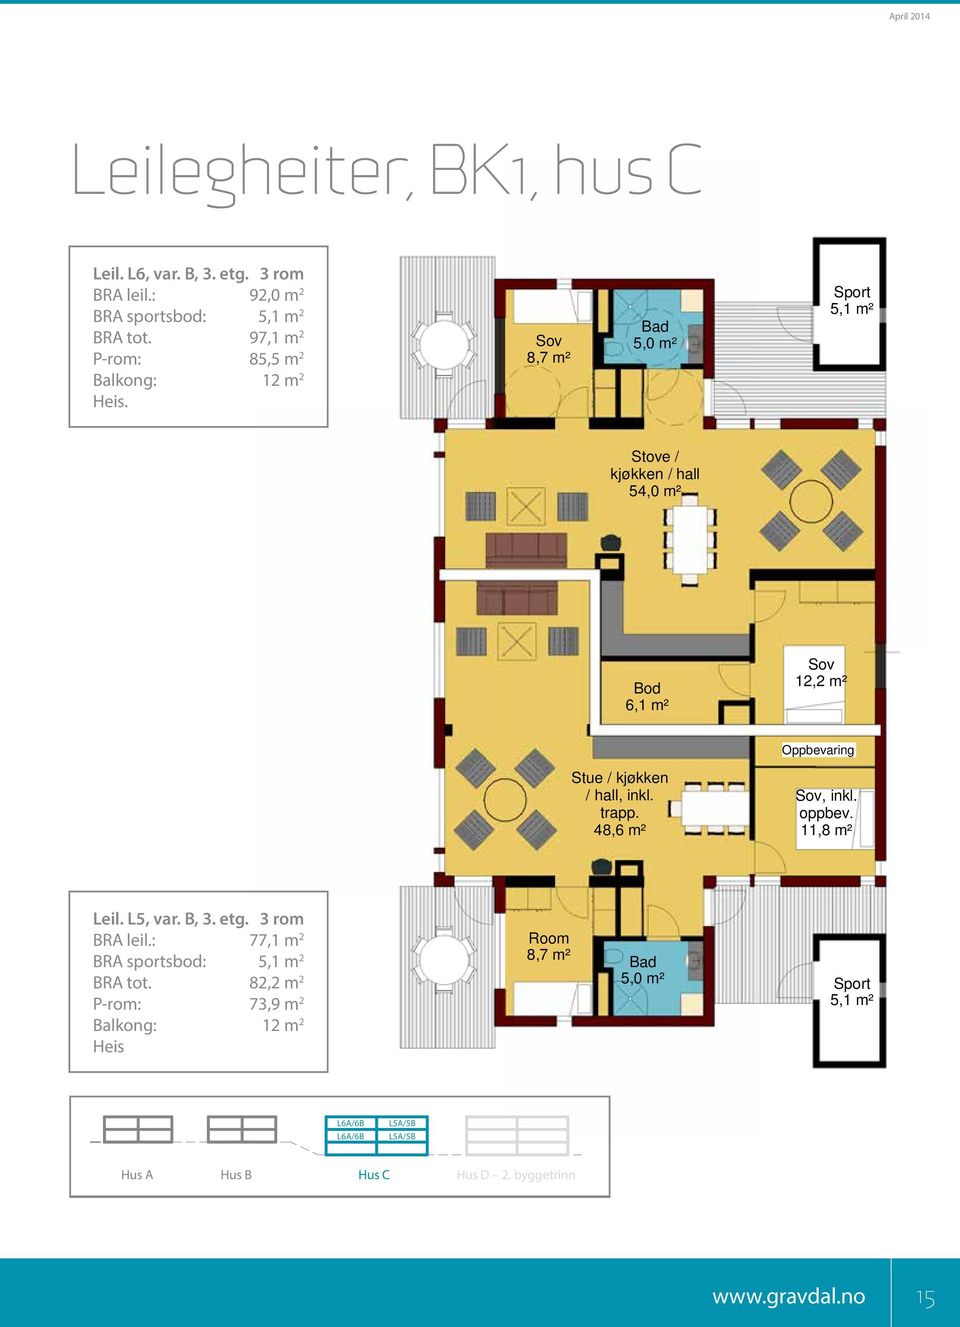 8,7 m² Bad 5,0 m² Sport 5,1 m² Stove / kjøkken / hall 54,0 m² Bod 6,1 m² 12,2 m² Oppbevaring Stue / kjøkken / hall, inkl. trapp.